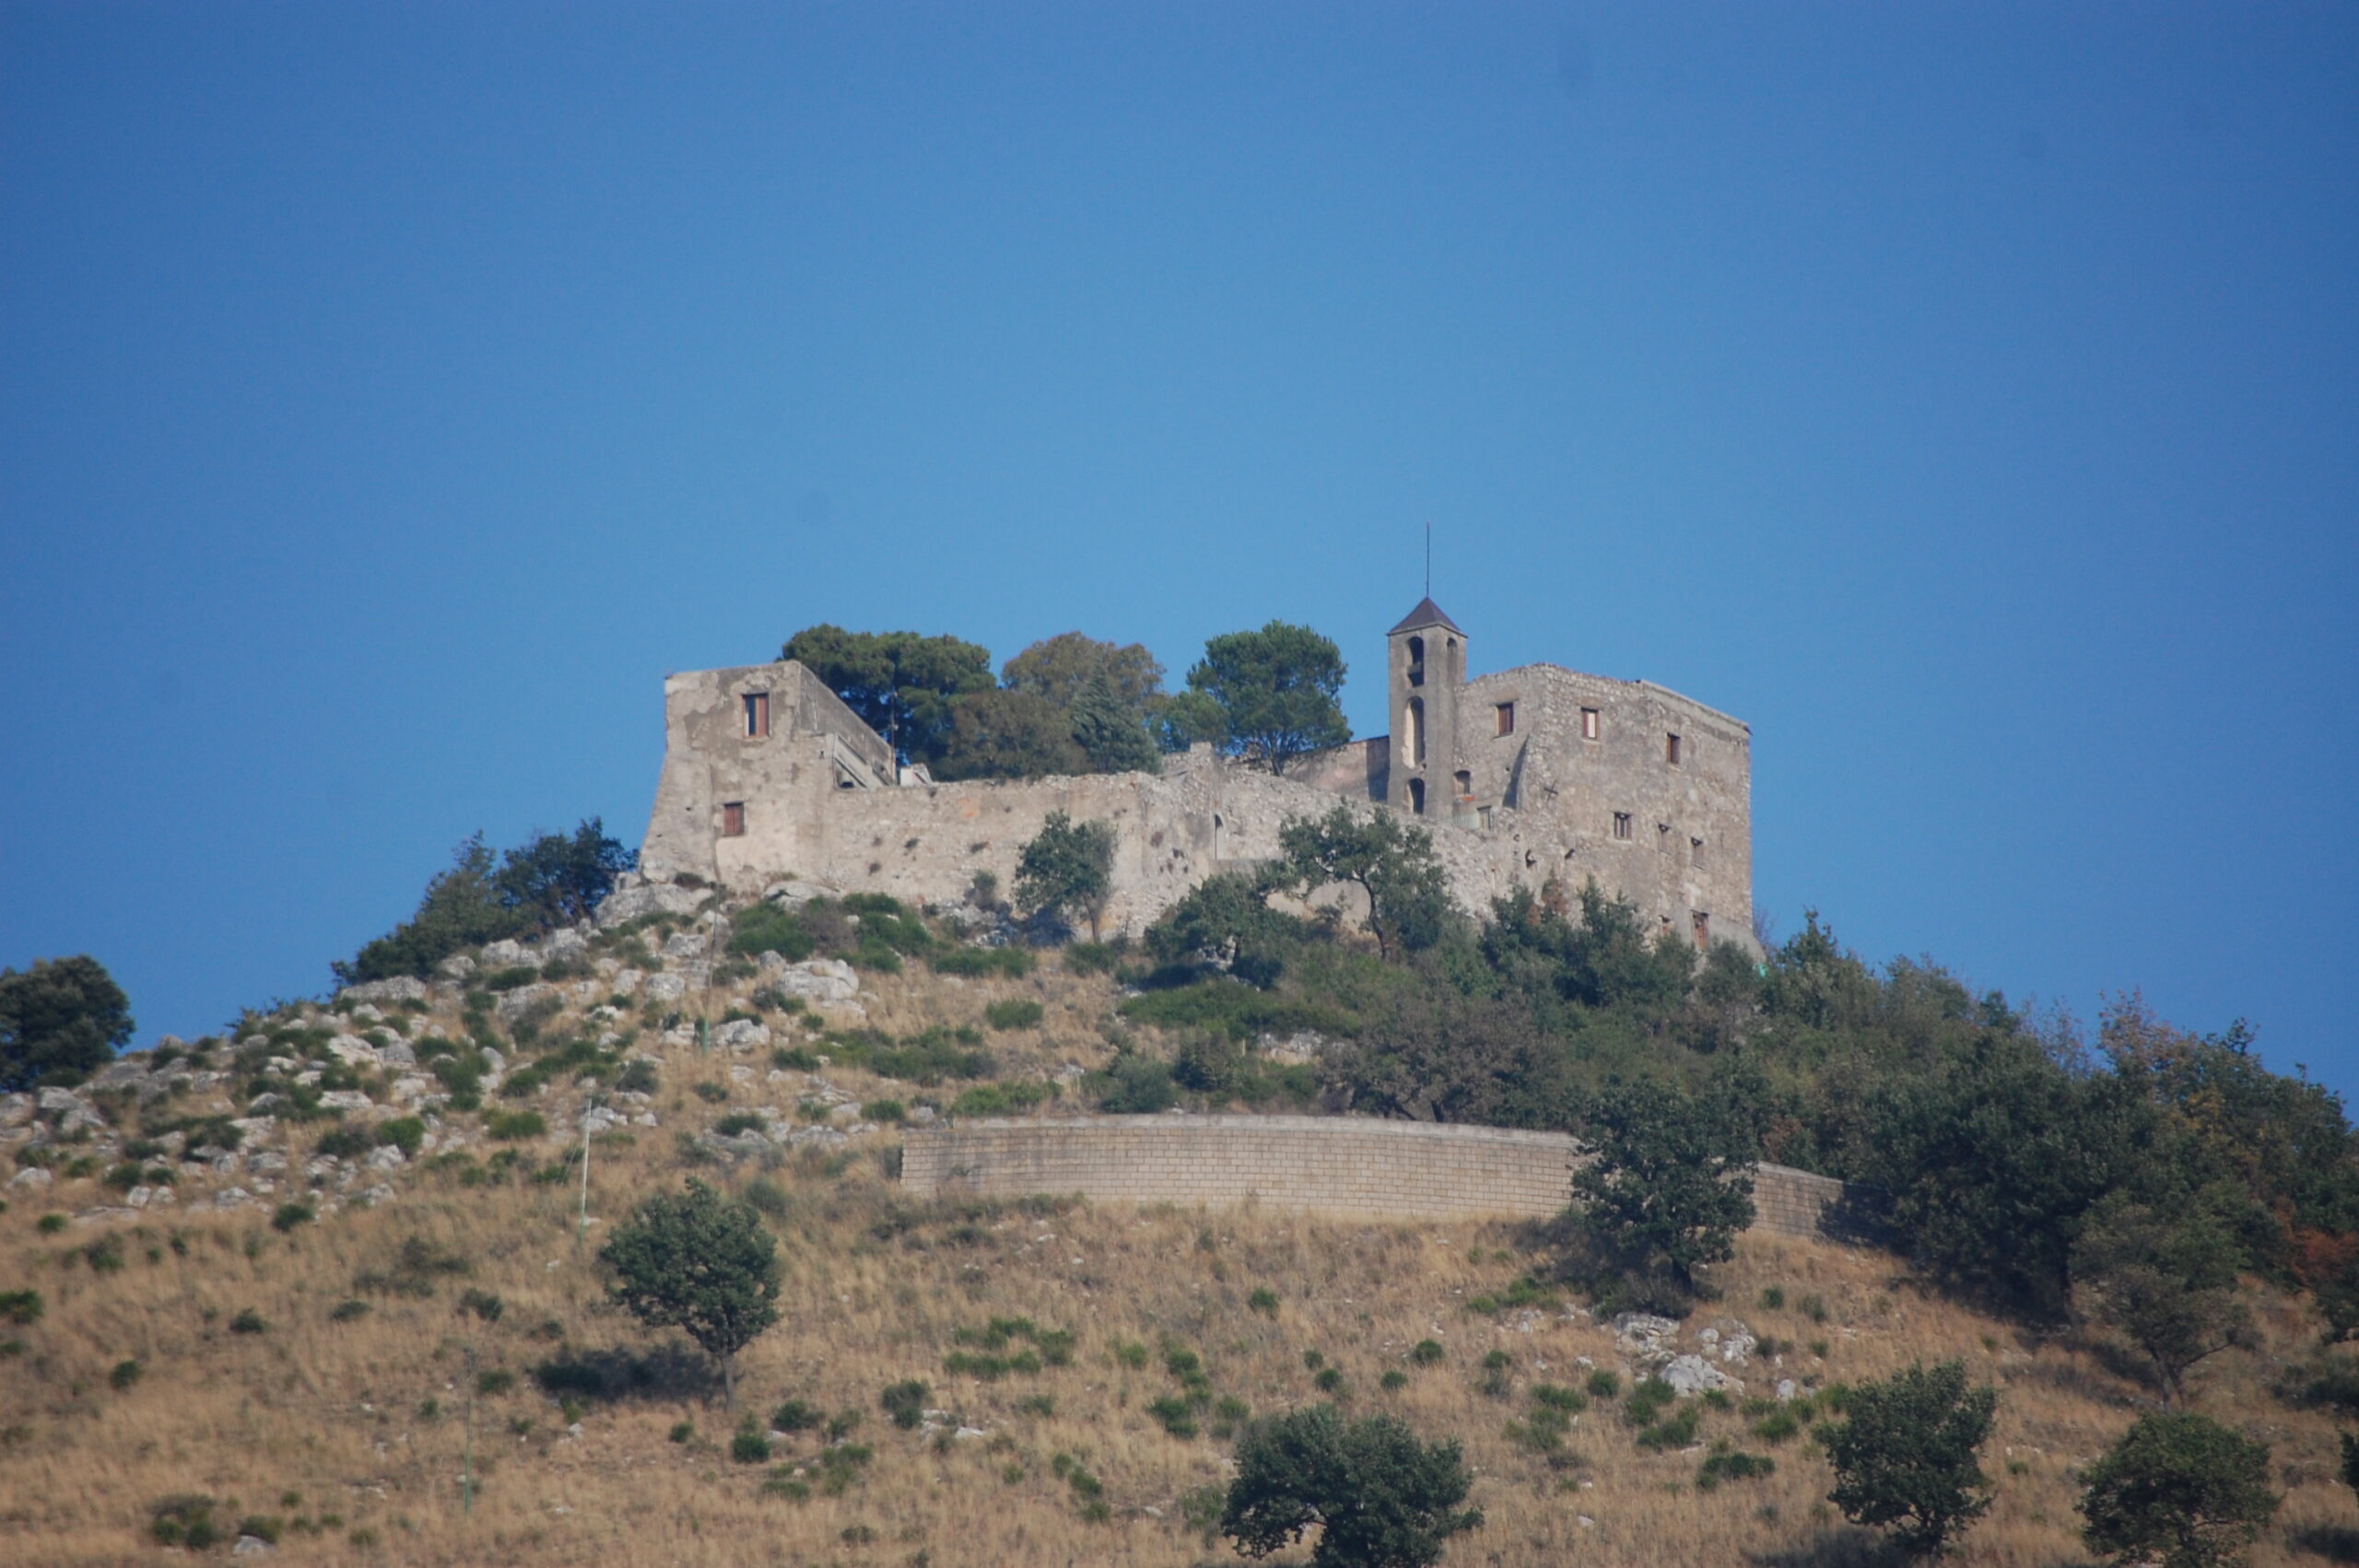 Cardine srl consolida un costone roccioso a Castel San Giorgio